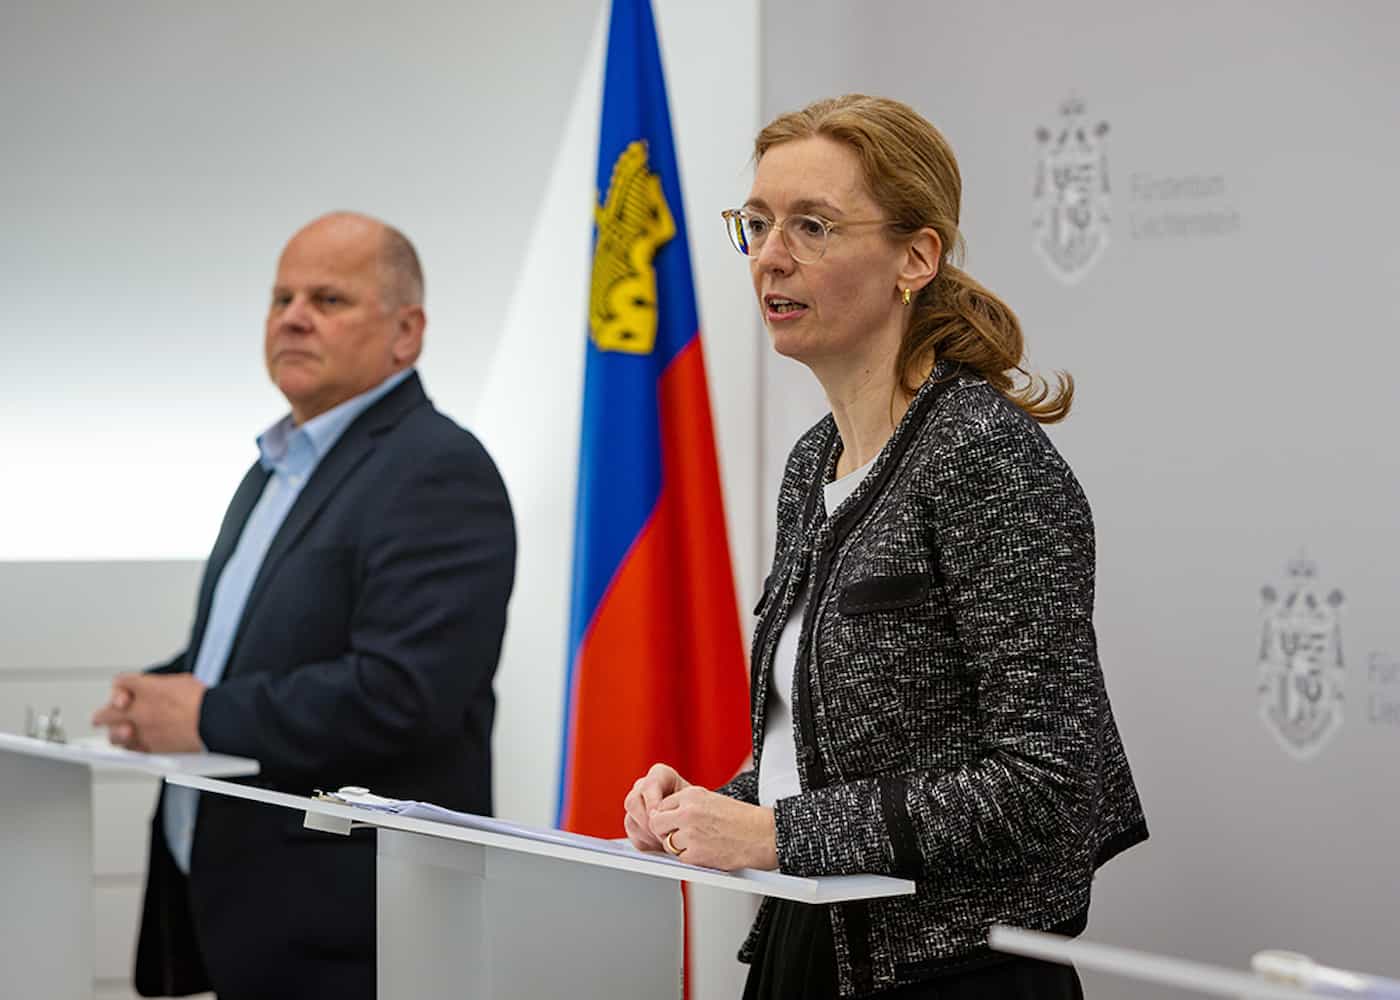 Regierungschef-Stellvertreterin Sabine Monauni informierte - zusammen mit Mario Konzett, dem Leiter vom Ausländer- und Passamt - über die Ukraine-Schutzverordnung